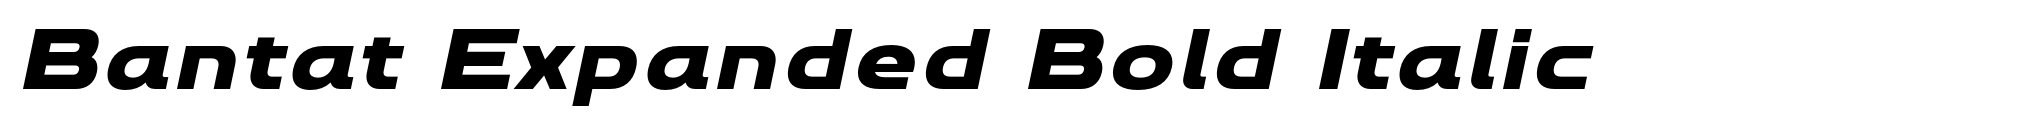 Bantat Expanded Bold Italic image